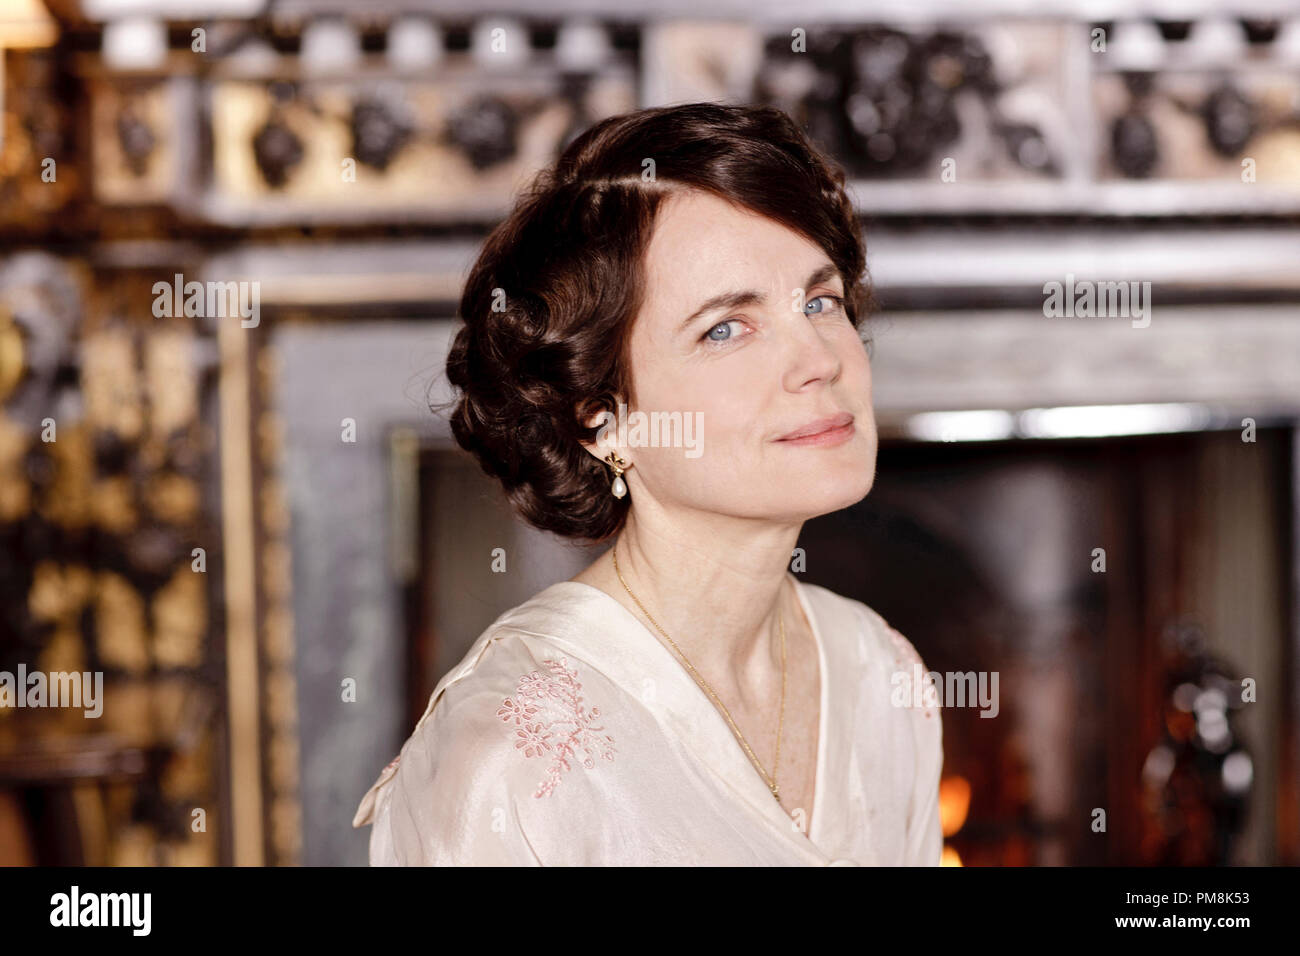 Cavendish Abbey stagione 2 - Episodio 1 mostrato: Elizabeth McGovern come Lady Cora Foto Stock